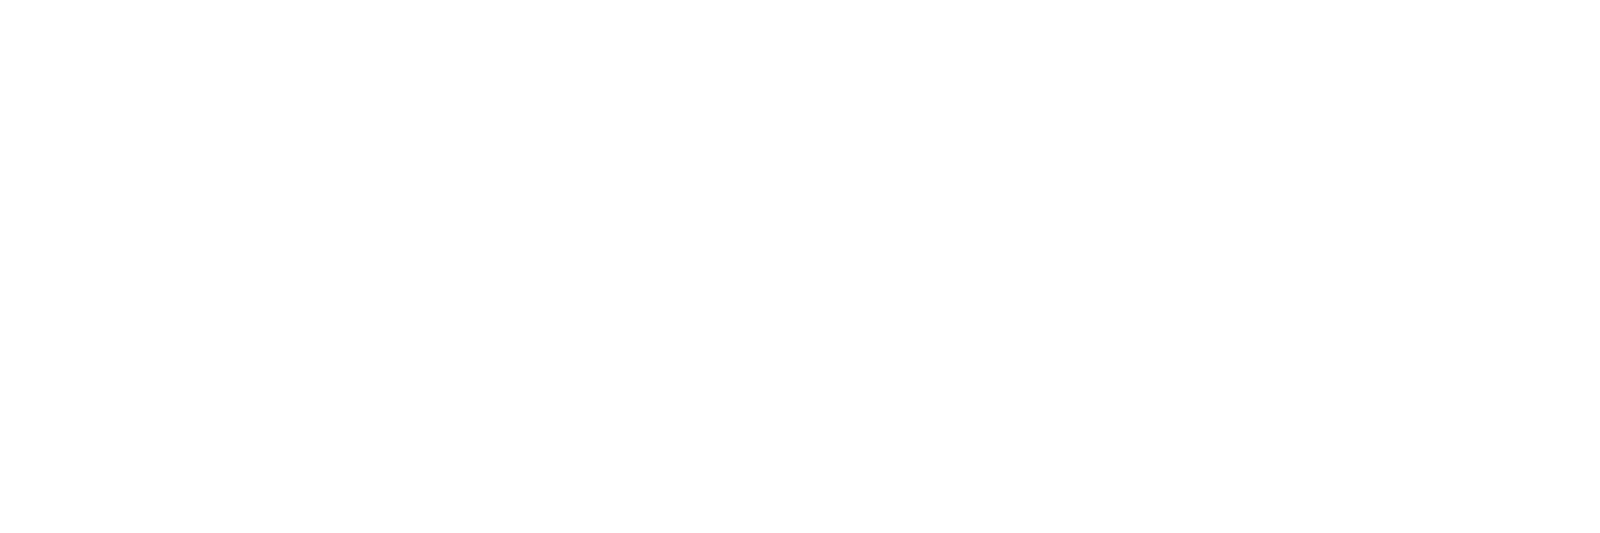 Lenovo partner badge